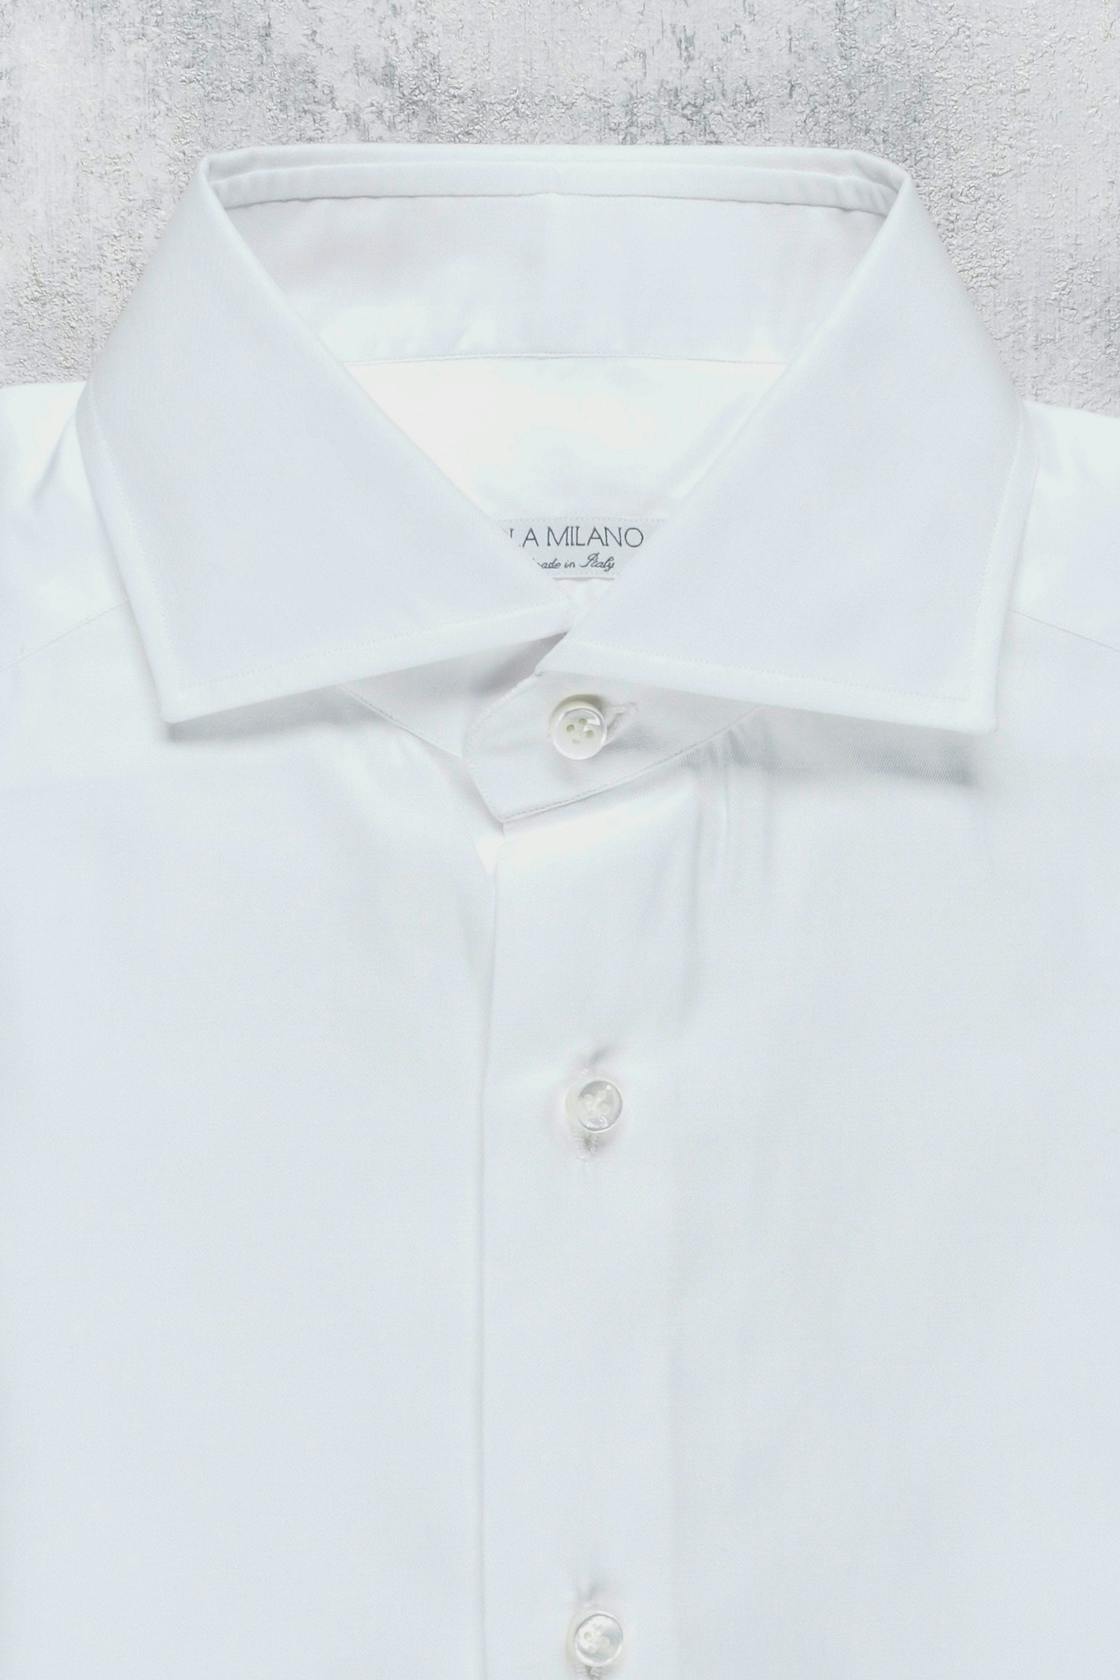 Viola Milano White Cotton Spread Collar Button Up Shirt